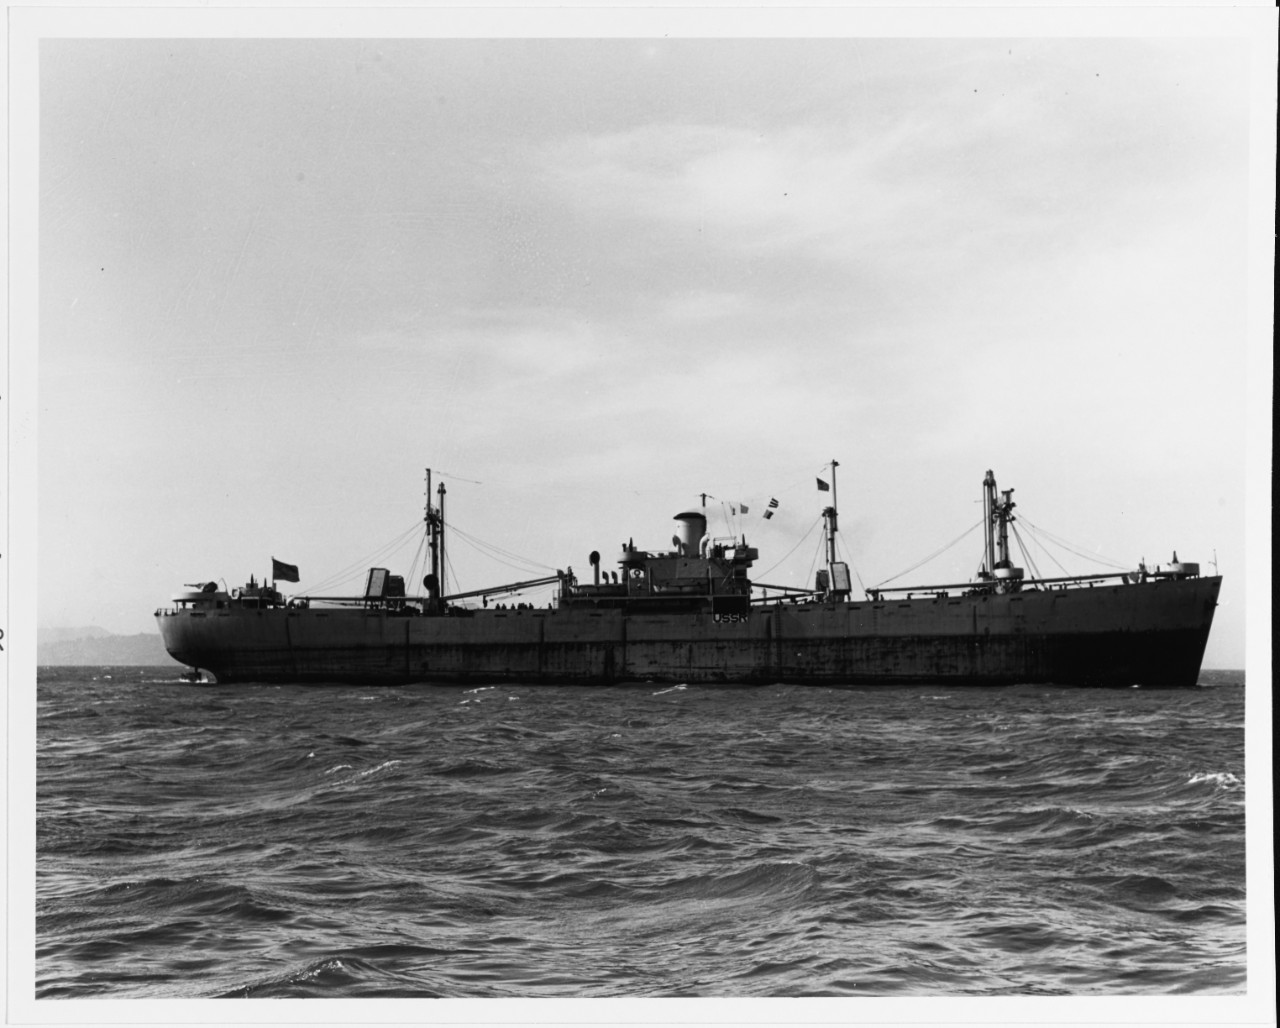 S.S. SOVETSKAYA GAVAN (Soviet Merchant Cargo Ship, 1943-1977)